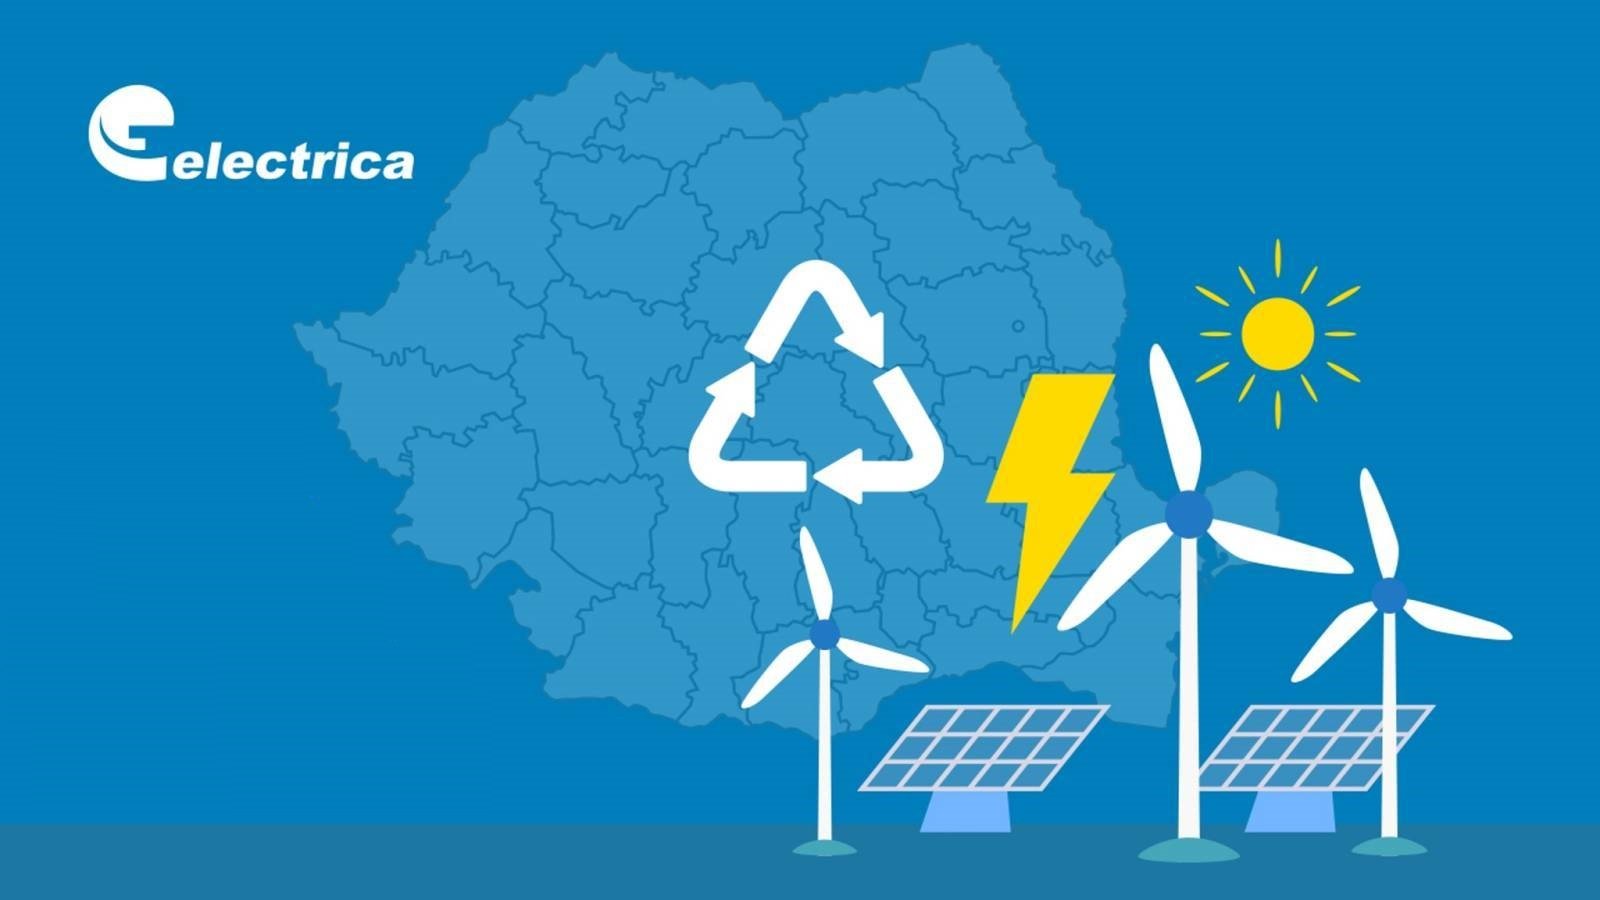 Electrica Cererile Oficiale ULTIM MOMENT Masurile Necesare Romania